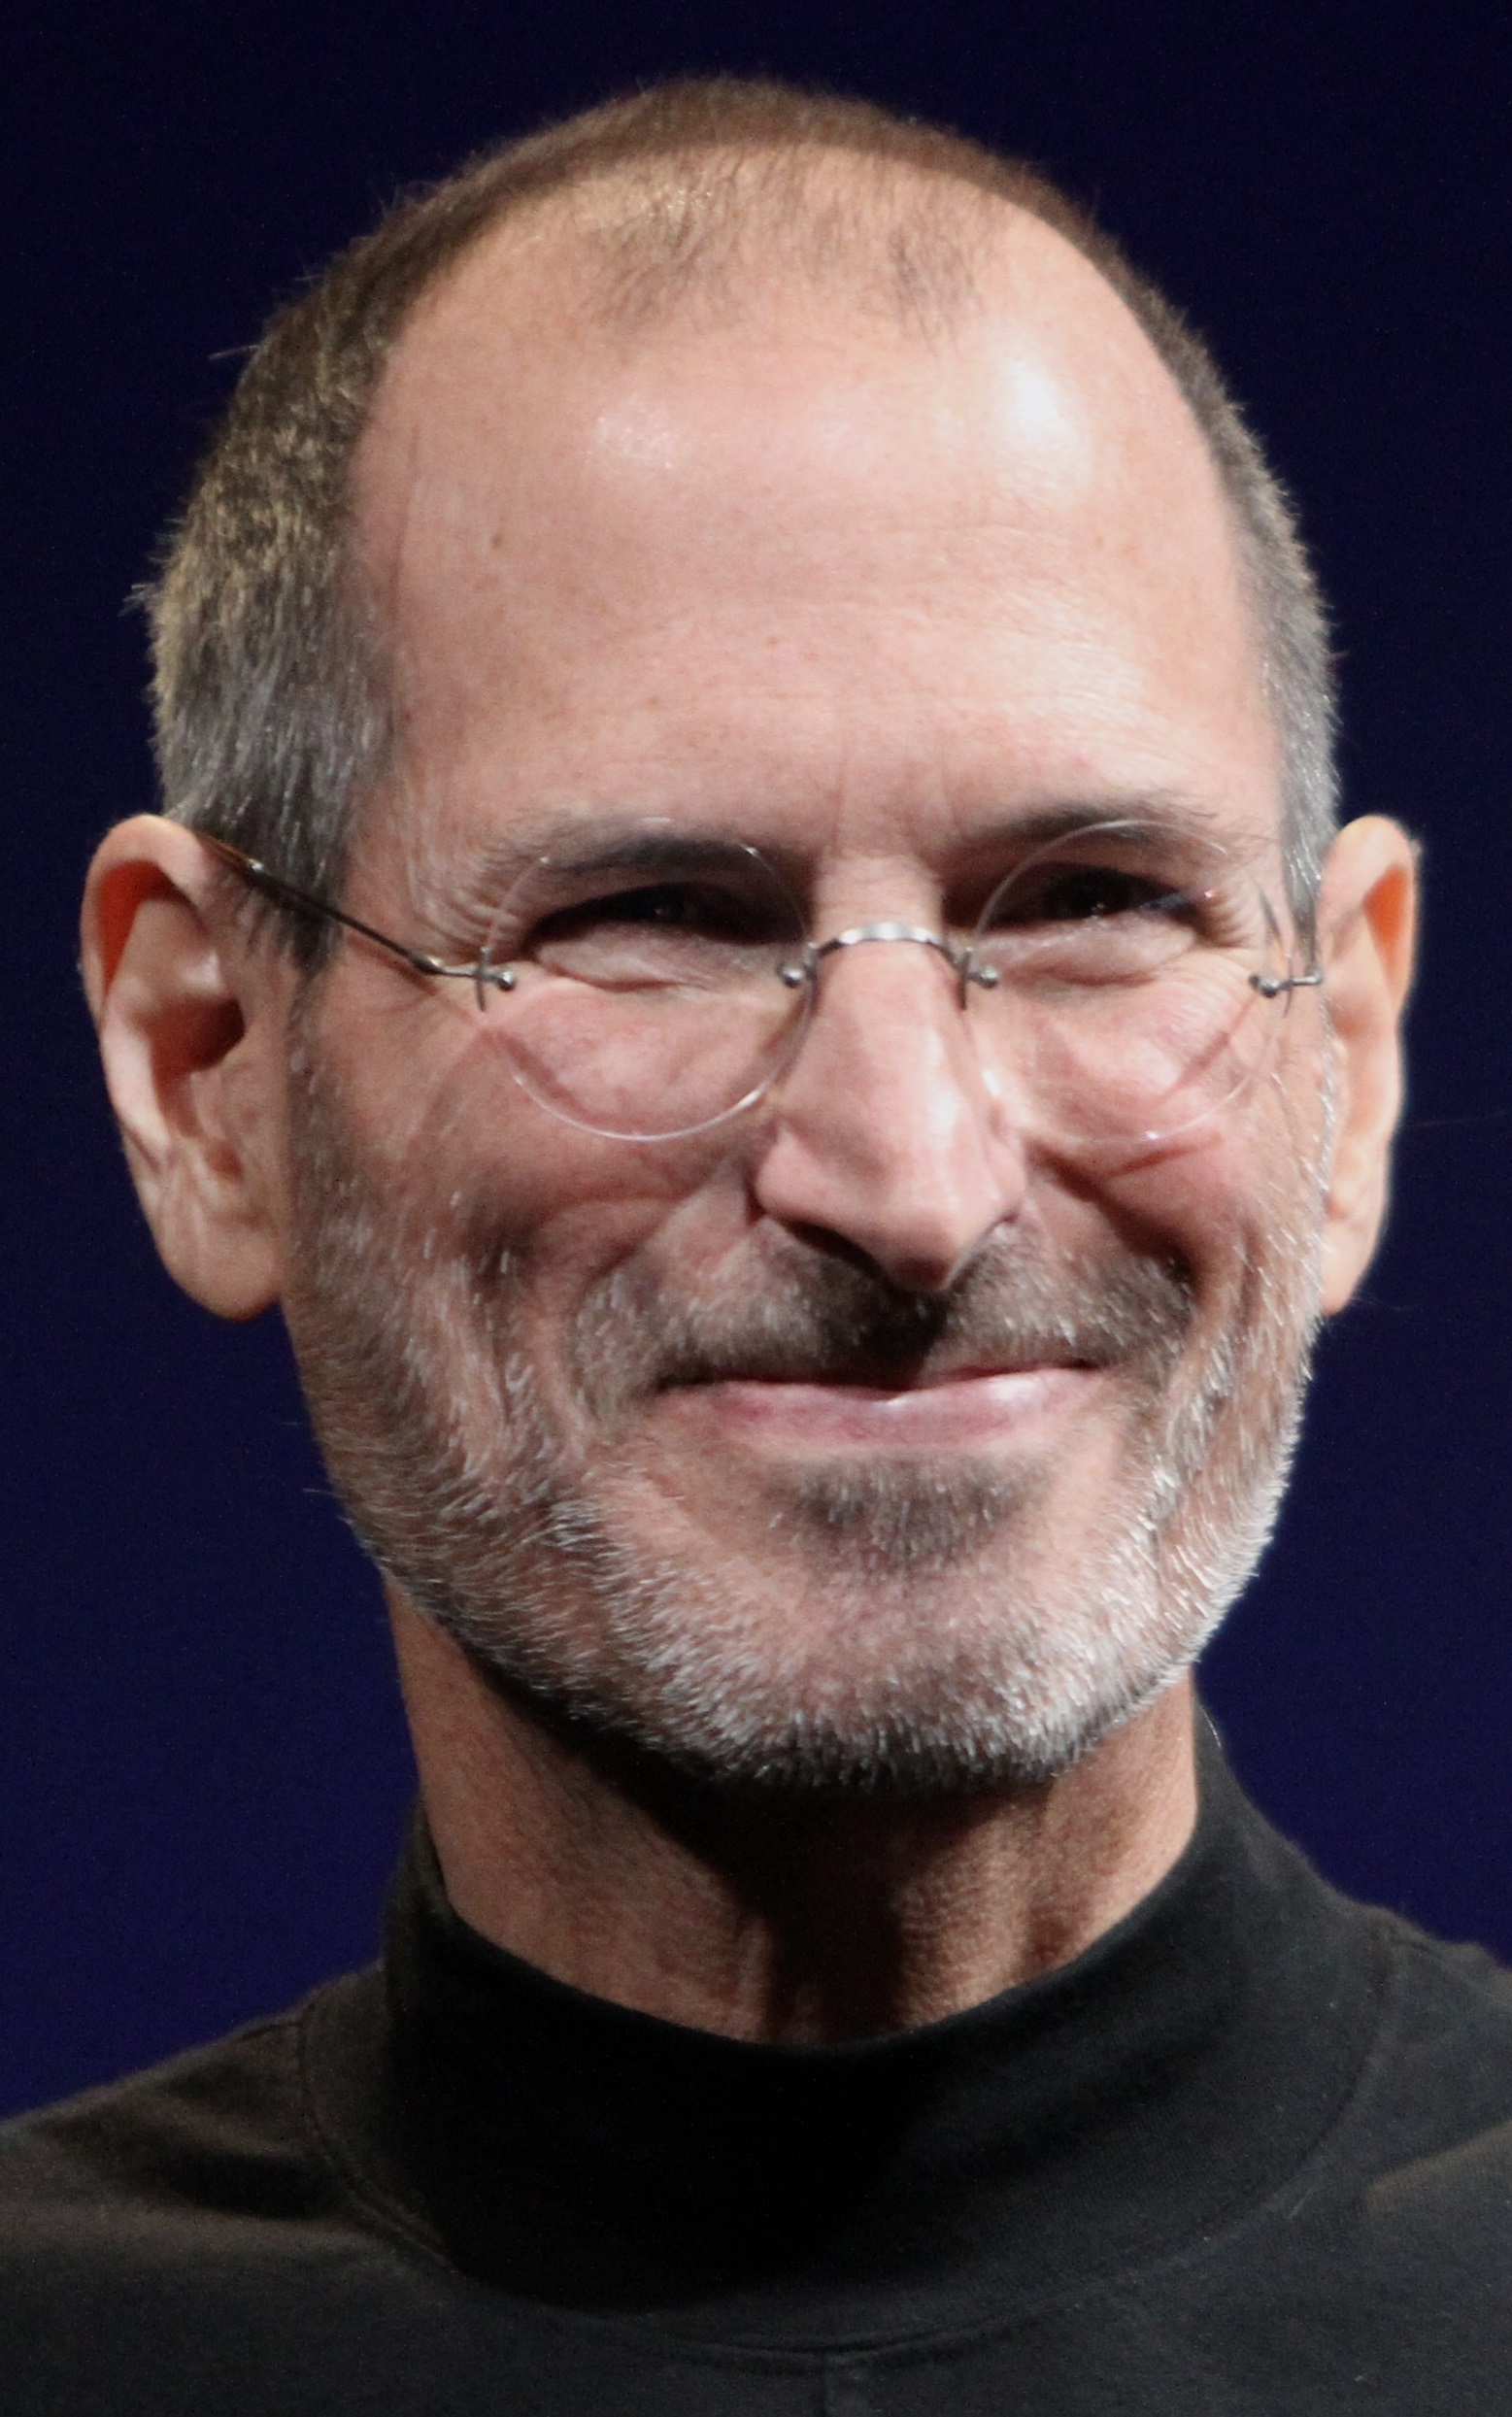 auteur Steve Jobs de la citation Parfois lorsque vous innovez, vous faites des erreurs. Il est préférable de les admettre rapidement et de continuer à améliorer vos autres innovations.